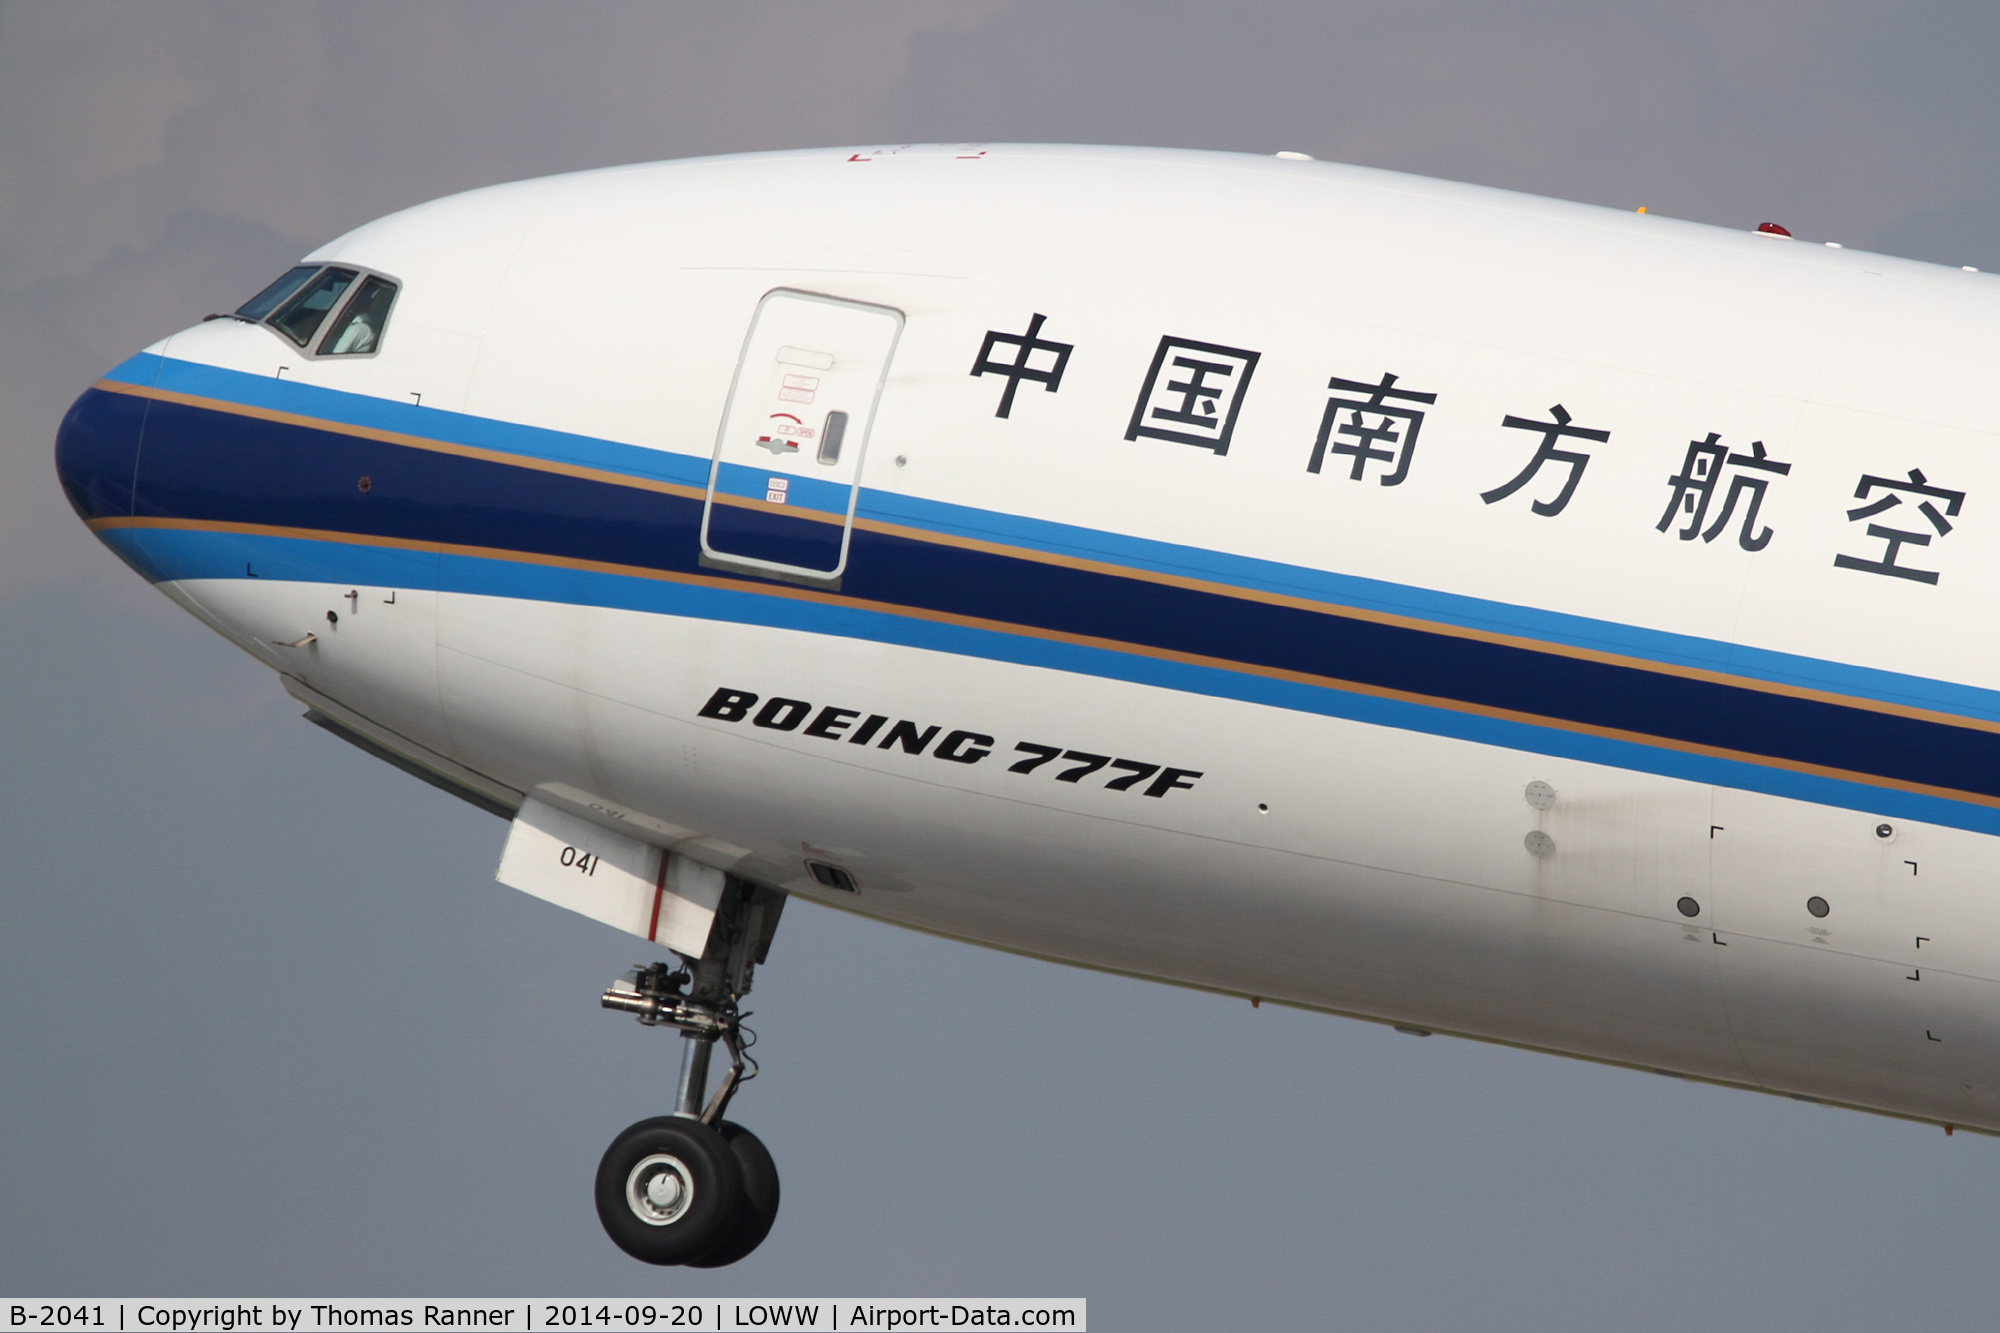 B-2041, 2013 Boeing 777-F1B C/N 41632, China Southern B777